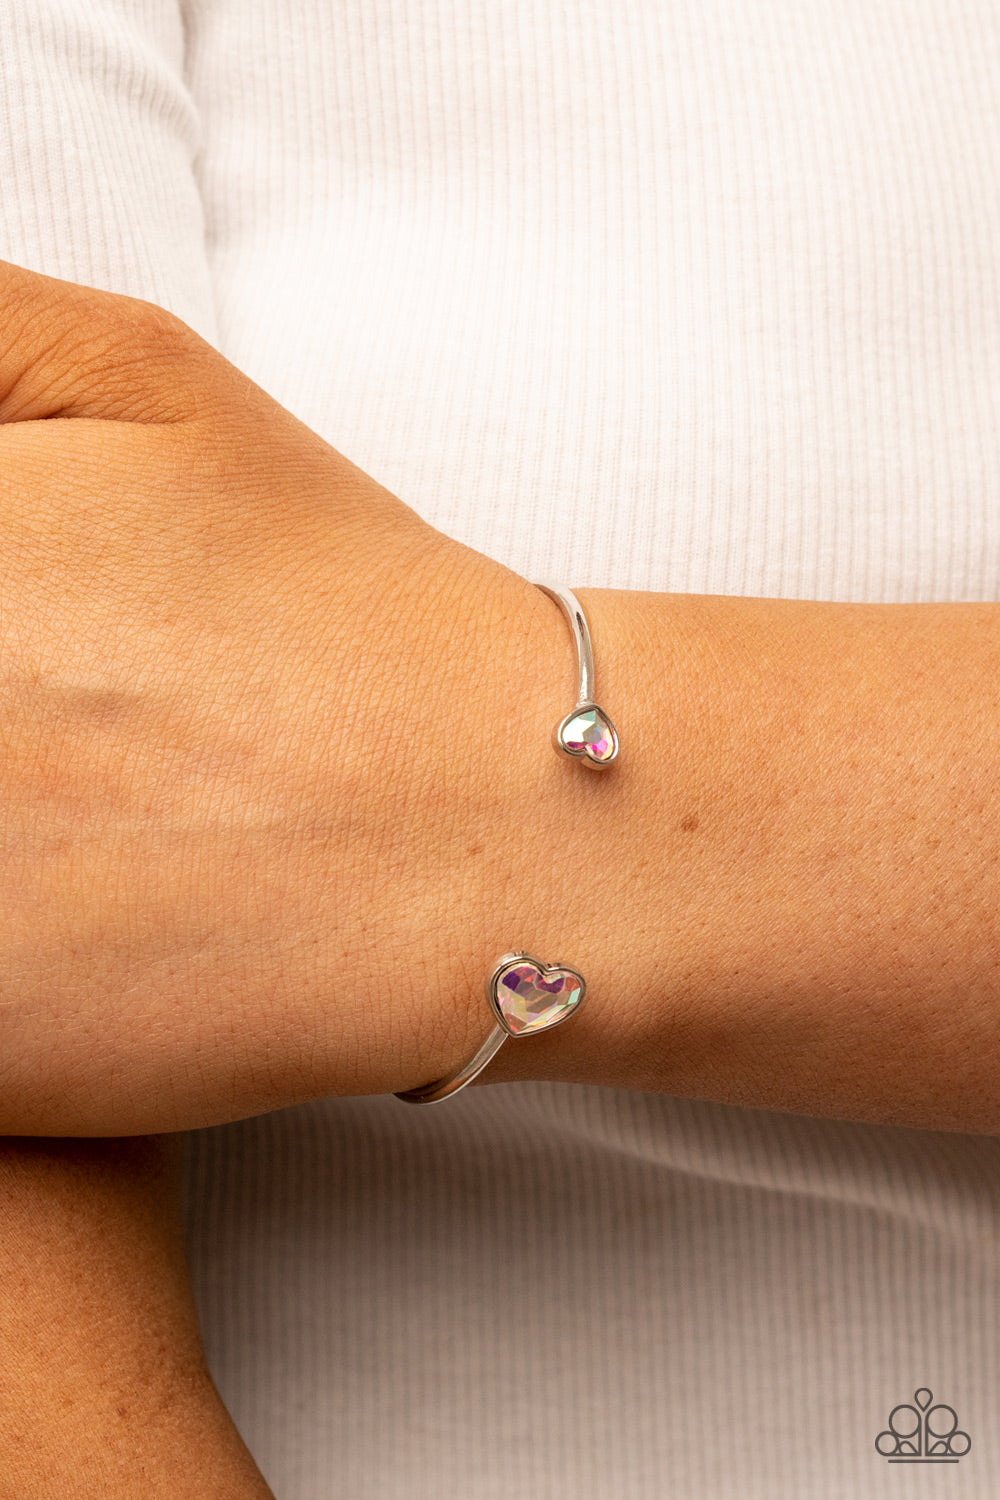 Unrequited Love - Multi Iridescent Bracelet - Paparazzi Accessories - GlaMarous Titi Jewels